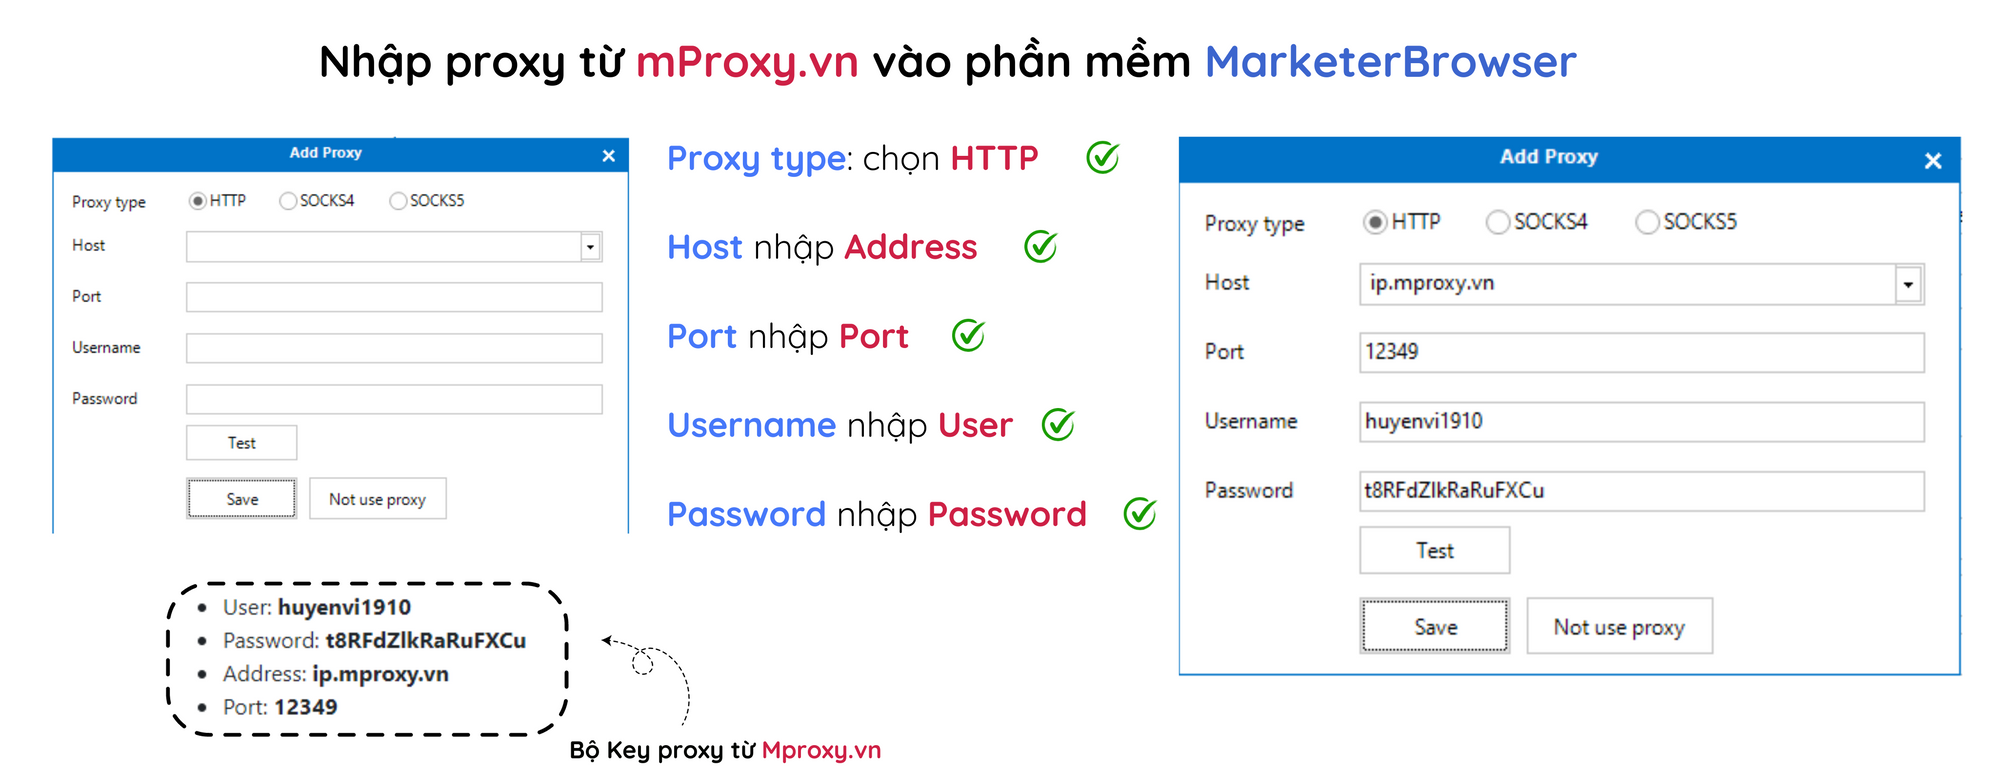 Trình duyệt ẩn danh MarketerBrowser -  Cách cấu hình proxy từ Mproxy.vn